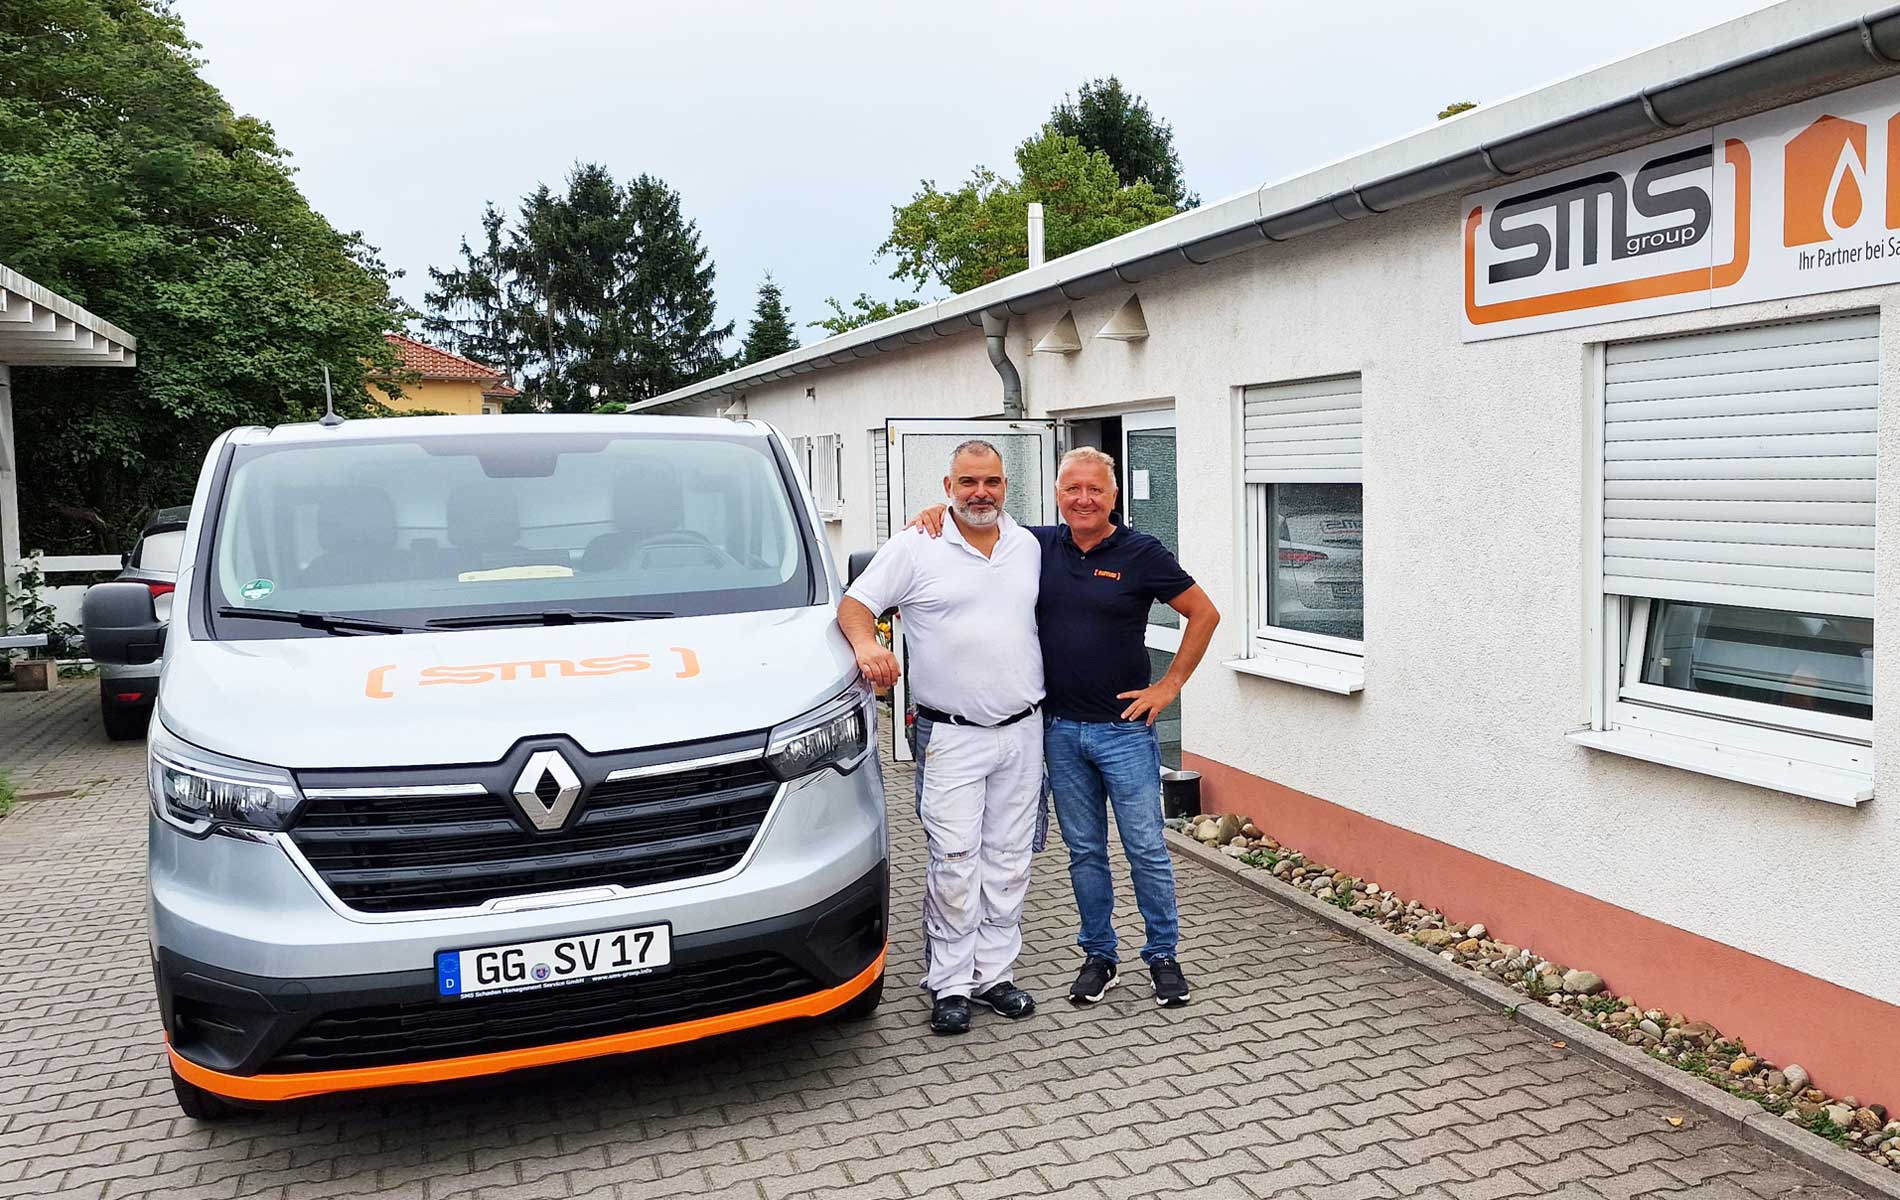 Neues Dienstfahrzeug (Flitzer) für Servicetechniker Pietro in Darmstadt / Groß-Gerau | SMS Group